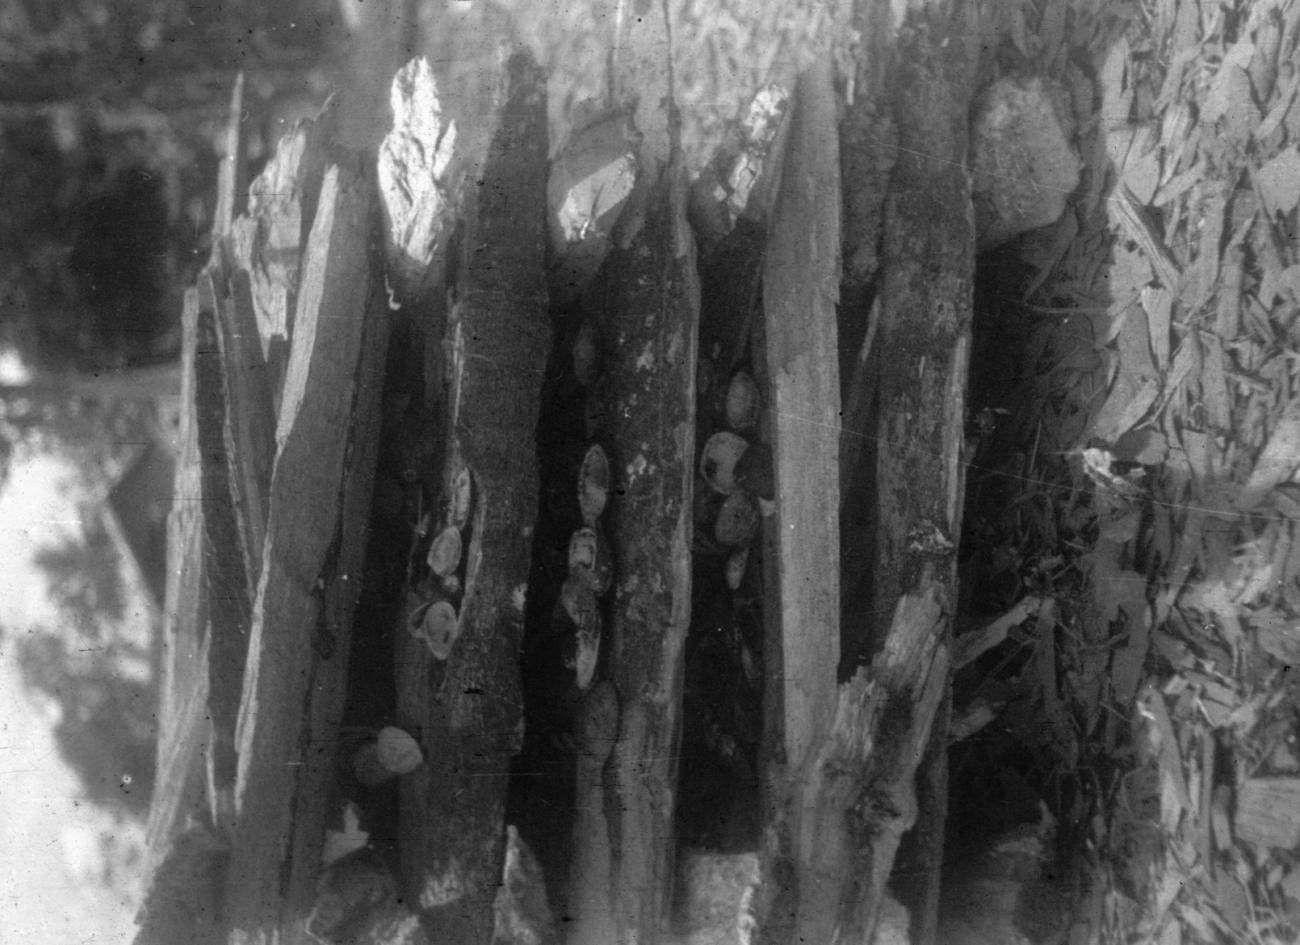 BD/216/1 - 
Stapel brandhout voor het branden van schelpen tot kalk
